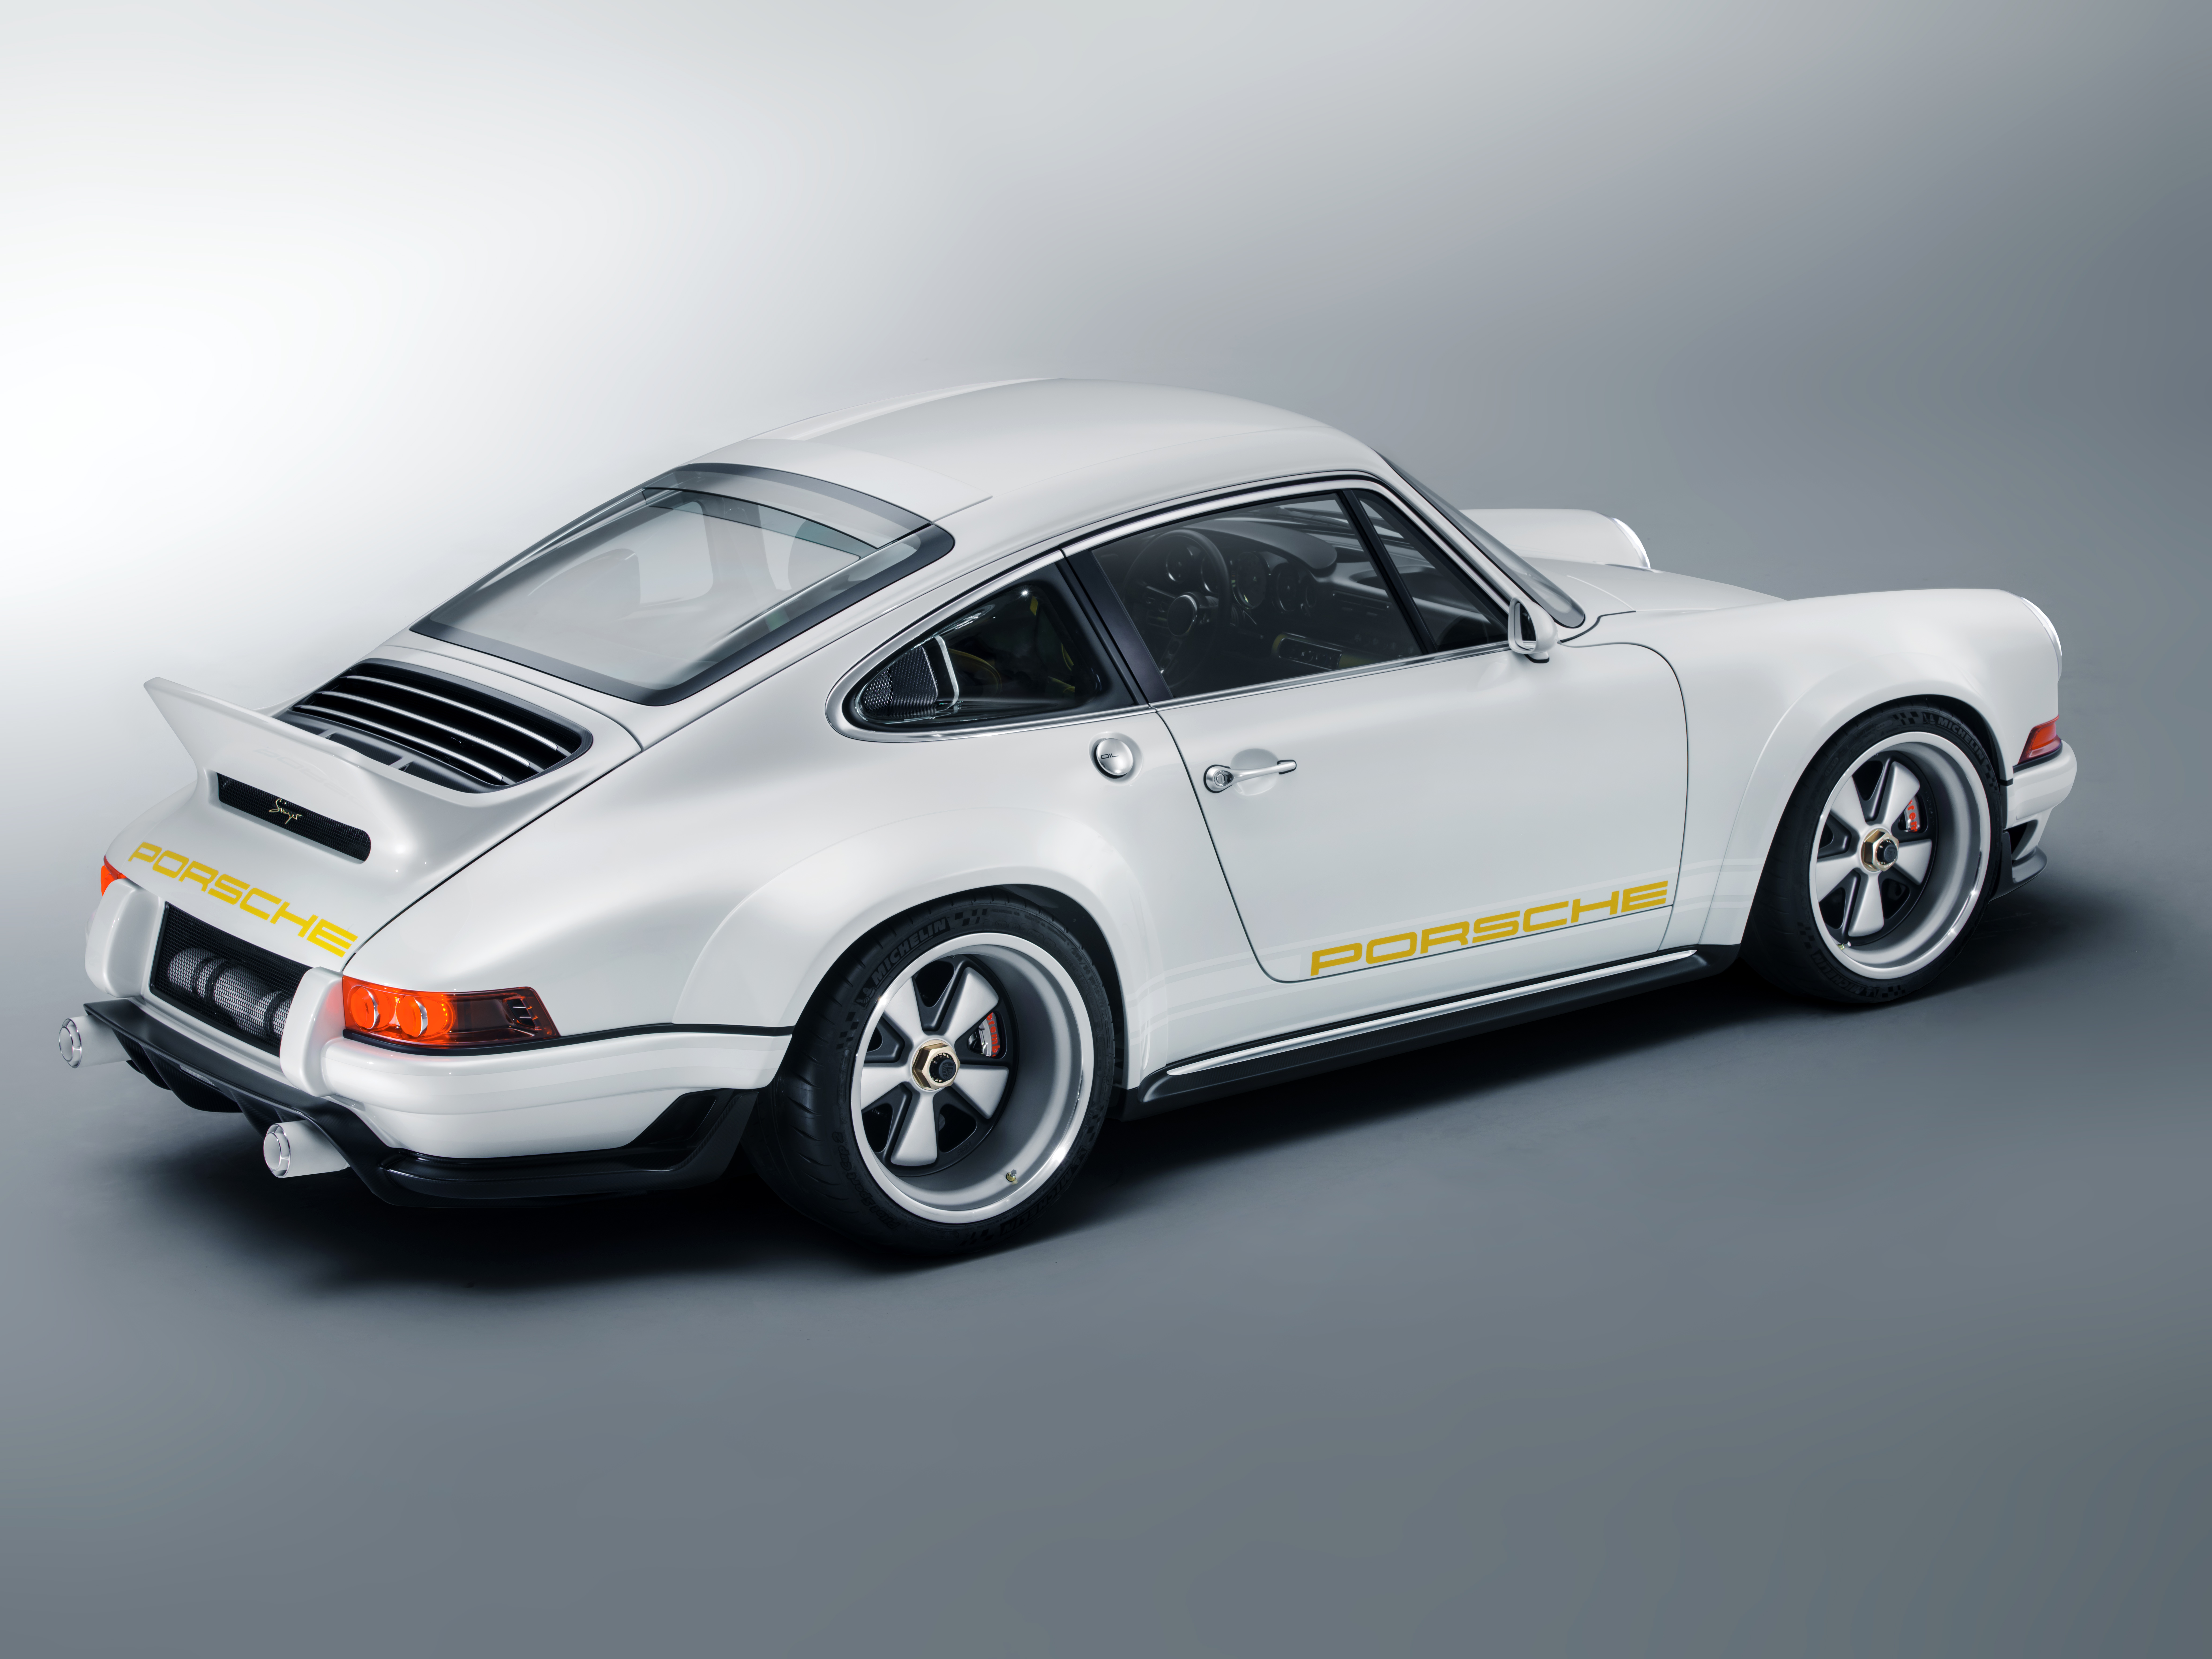 Porsche 911 Singer Vehicle Design DLS 4.0L, 500 hp Paul Tan Image